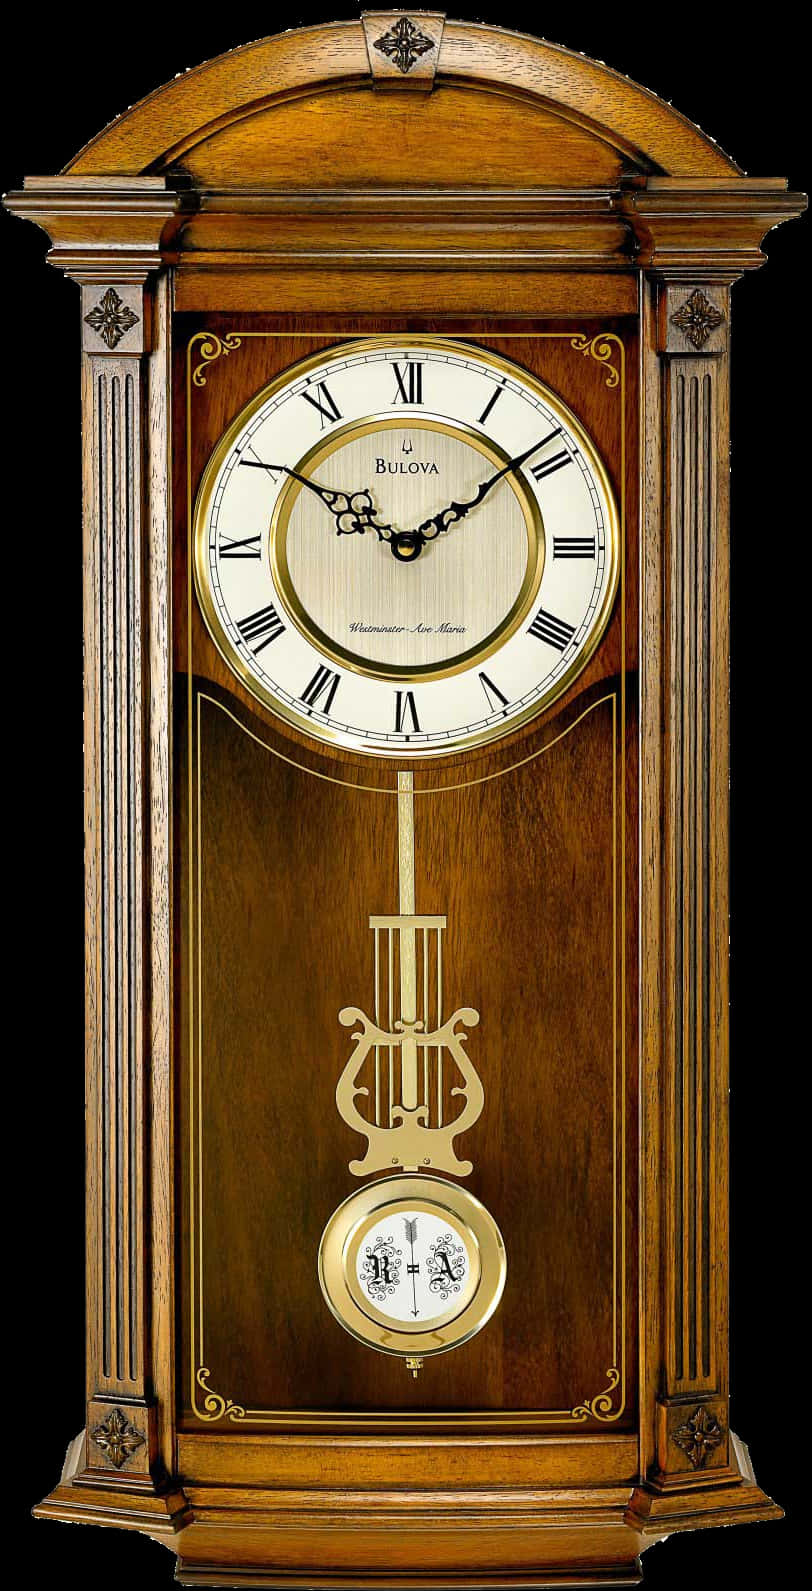 Download Elegant Bulova Grandfather Clock | Wallpapers.com